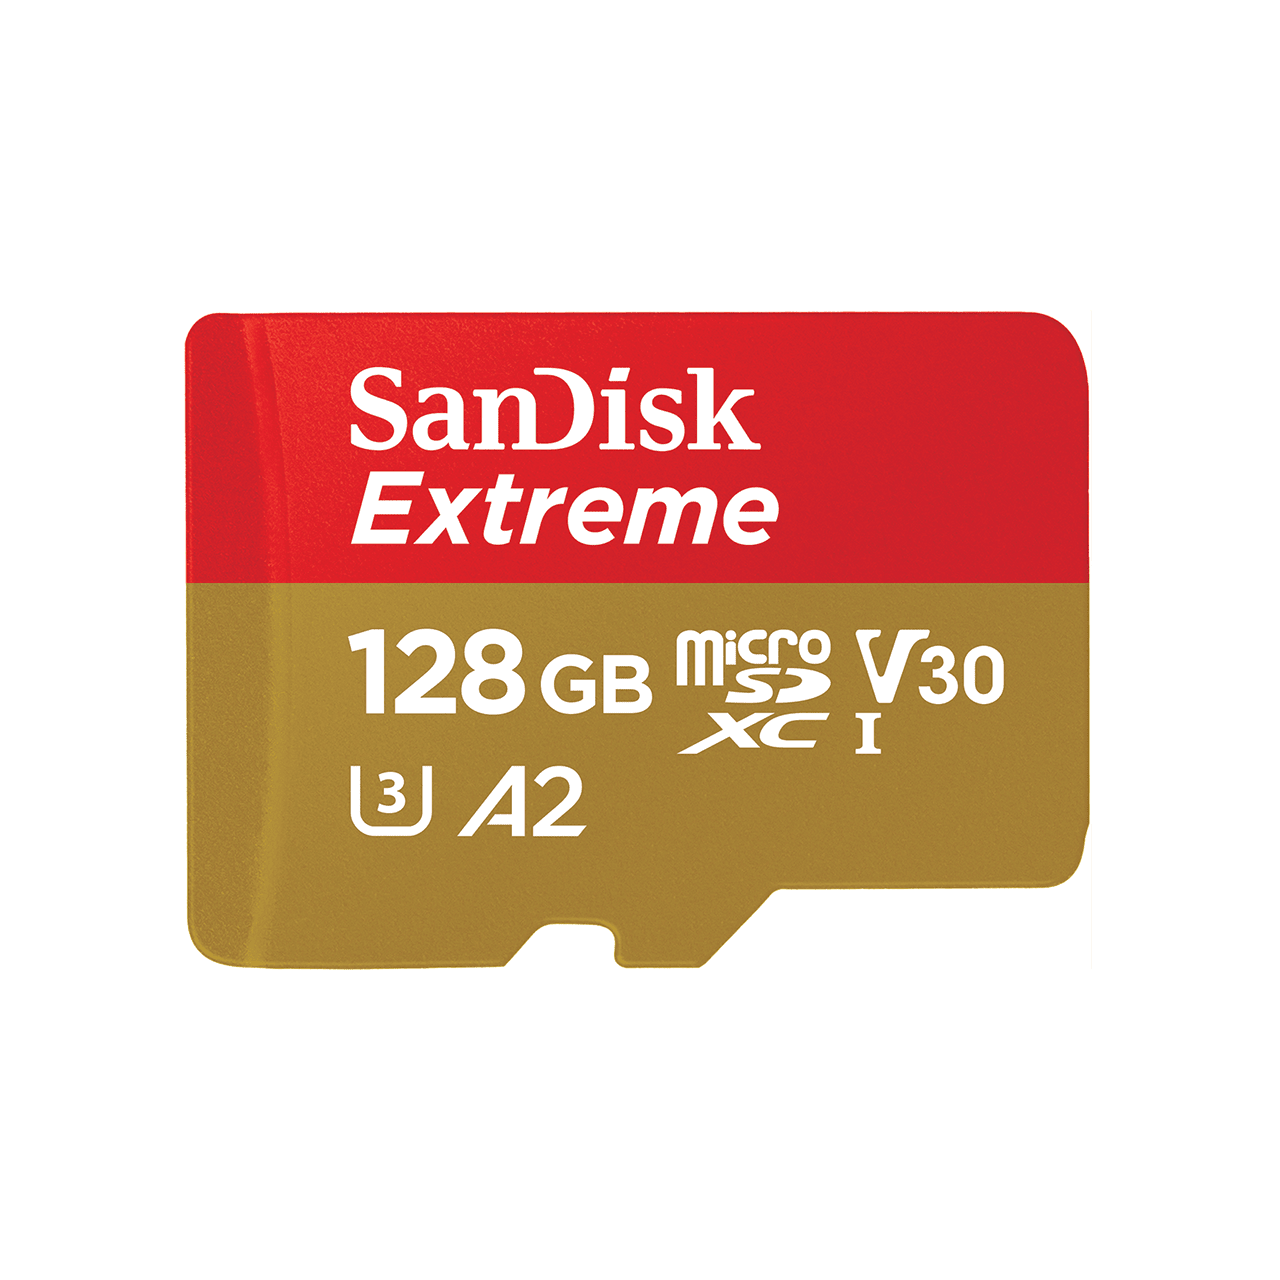 SanDisk Extreme® microSDXC™ UHS-I Card – 128GB - Image2